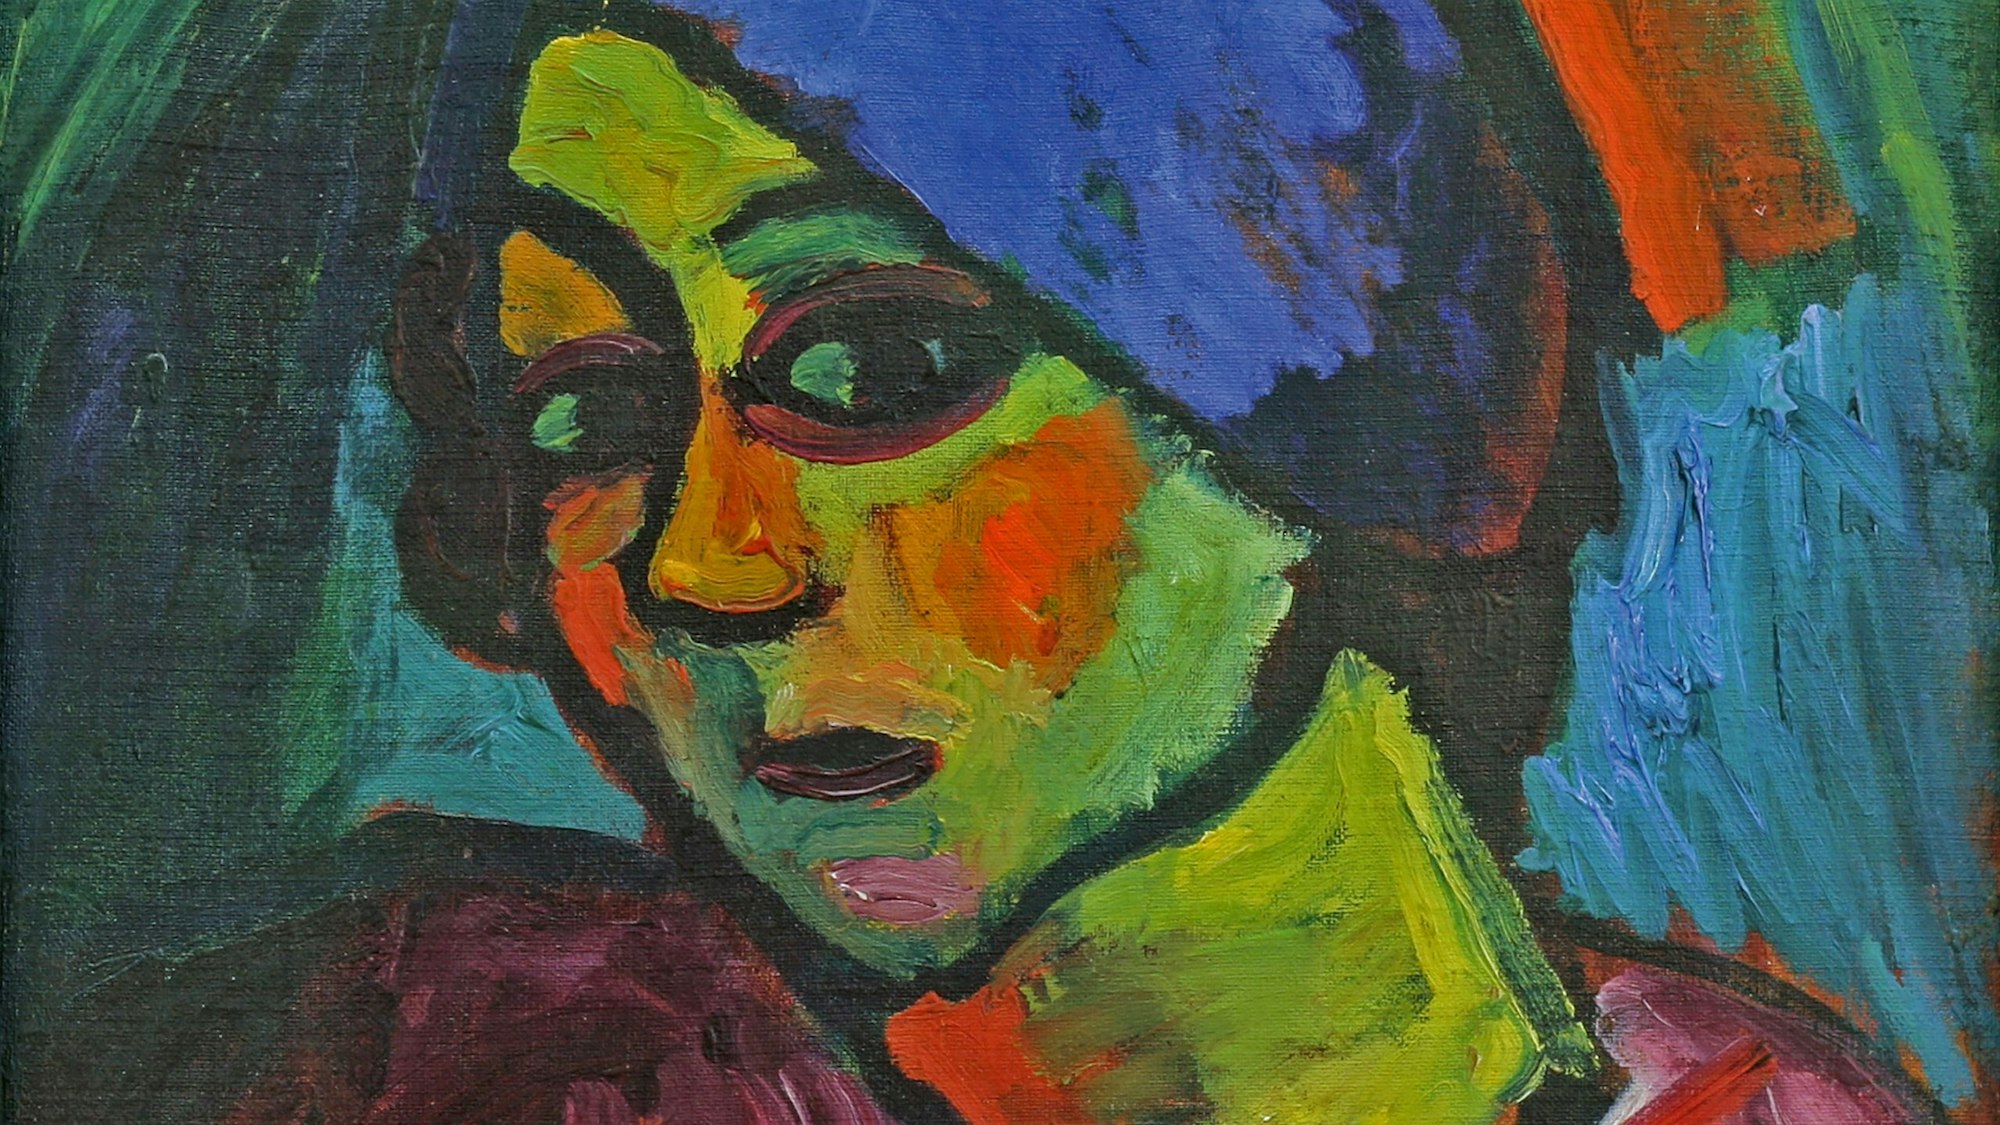 Eine Frau mit grüner Haut, roten Wangen und blauem Turban schaut den Betrachter an.